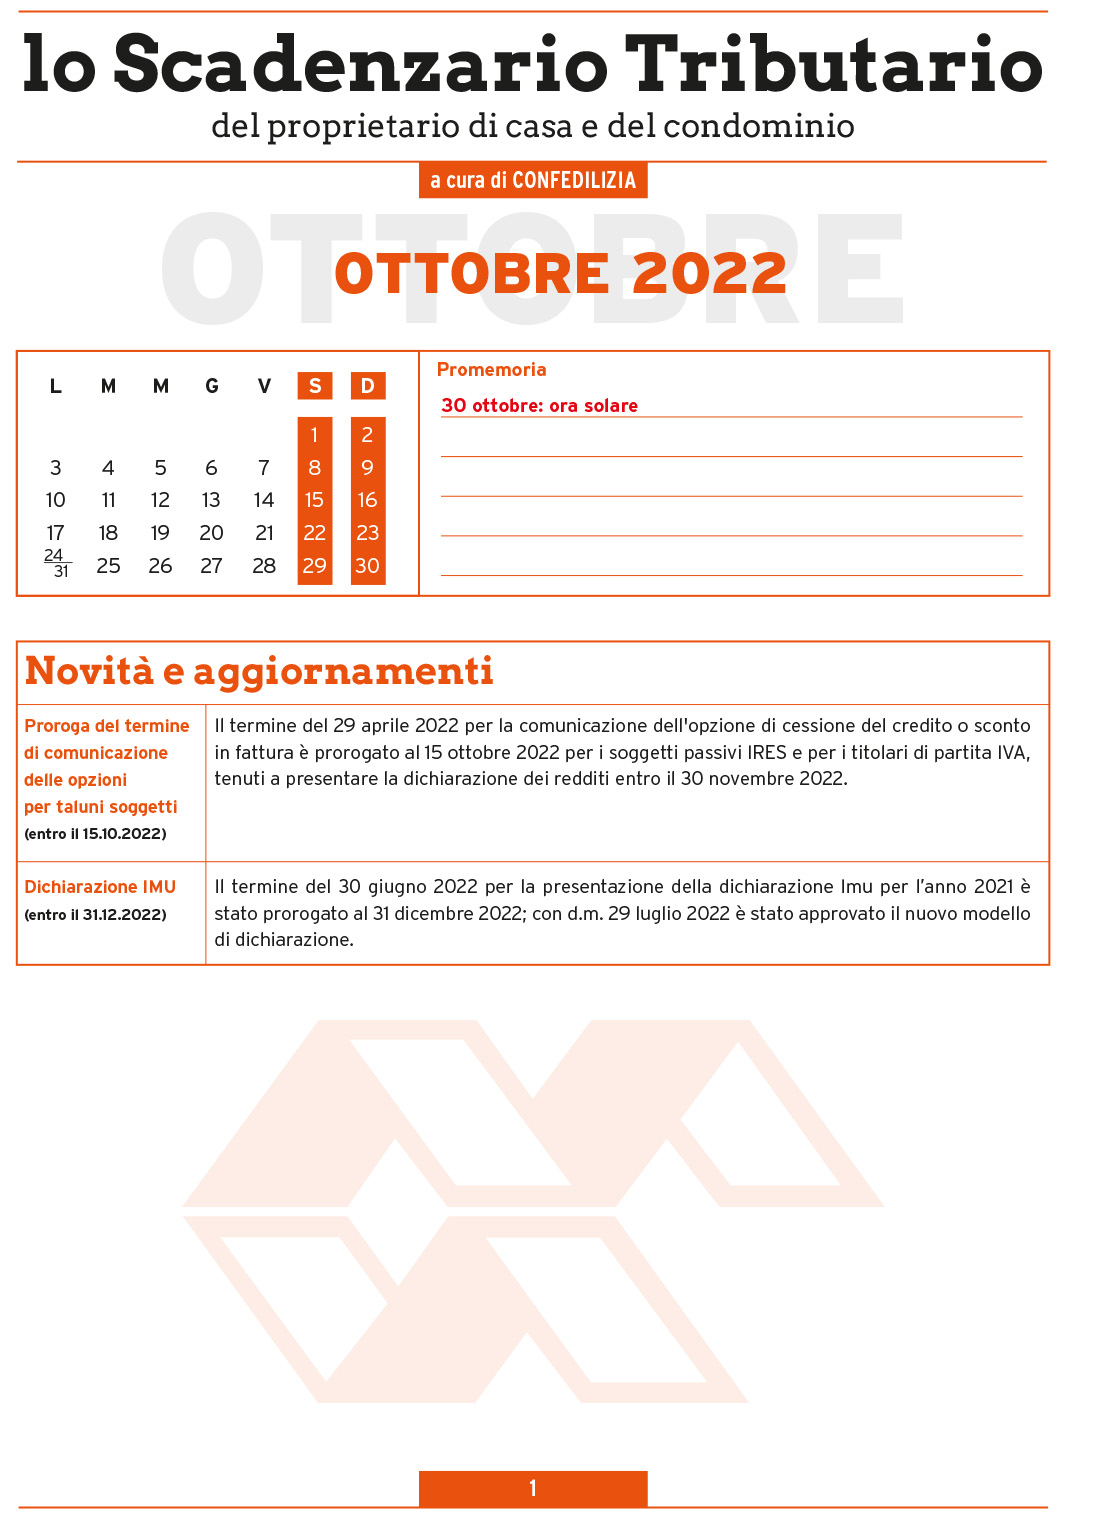 SCADENZARIO TRIBUTARIO OTTOBRE 2022 (8 pagg.)-1